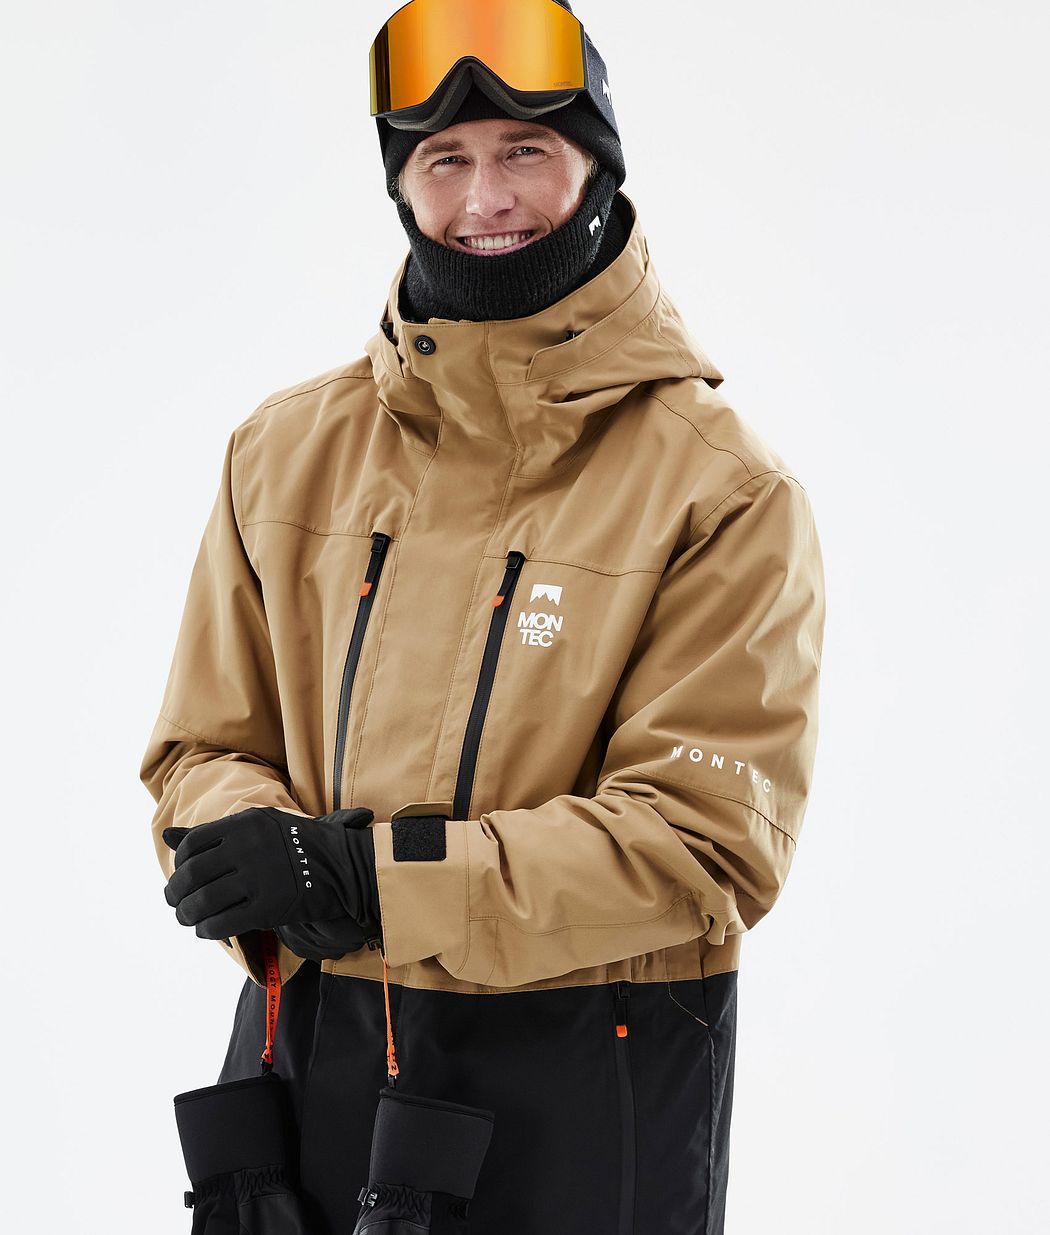 Fawk Veste Snowboard Homme Gold/Black